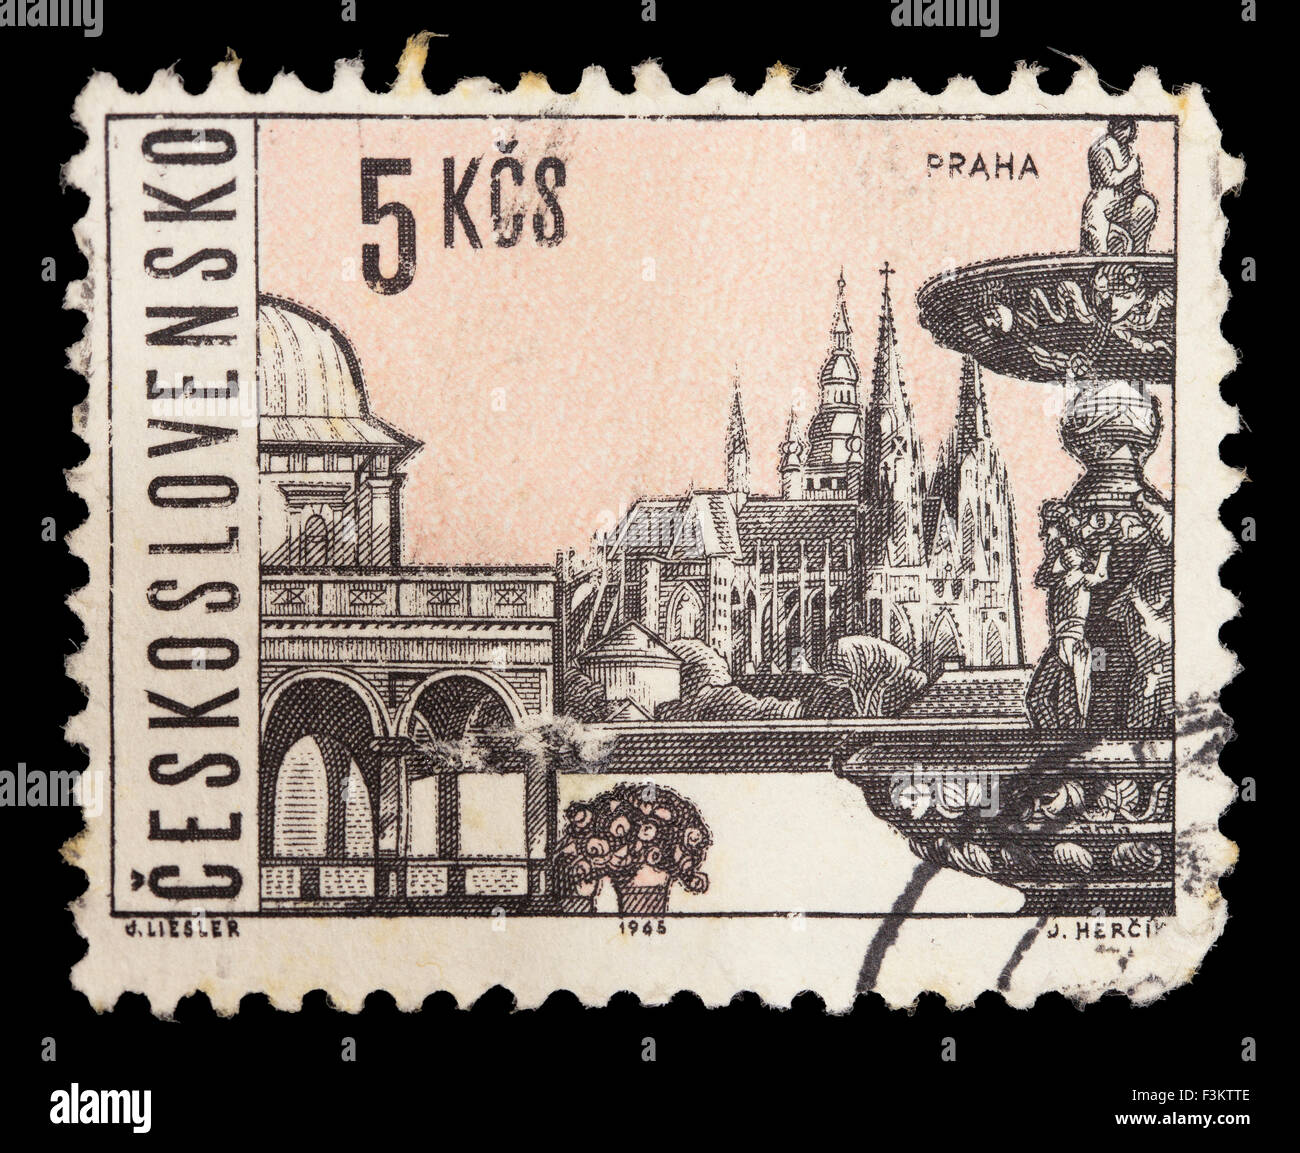 Tschechoslowakei - ca. 1965: Eine Briefmarke gedruckt in der Tschechoslowakei zeigt historische UNESCO-Welterbestätten in Prag Stockfoto